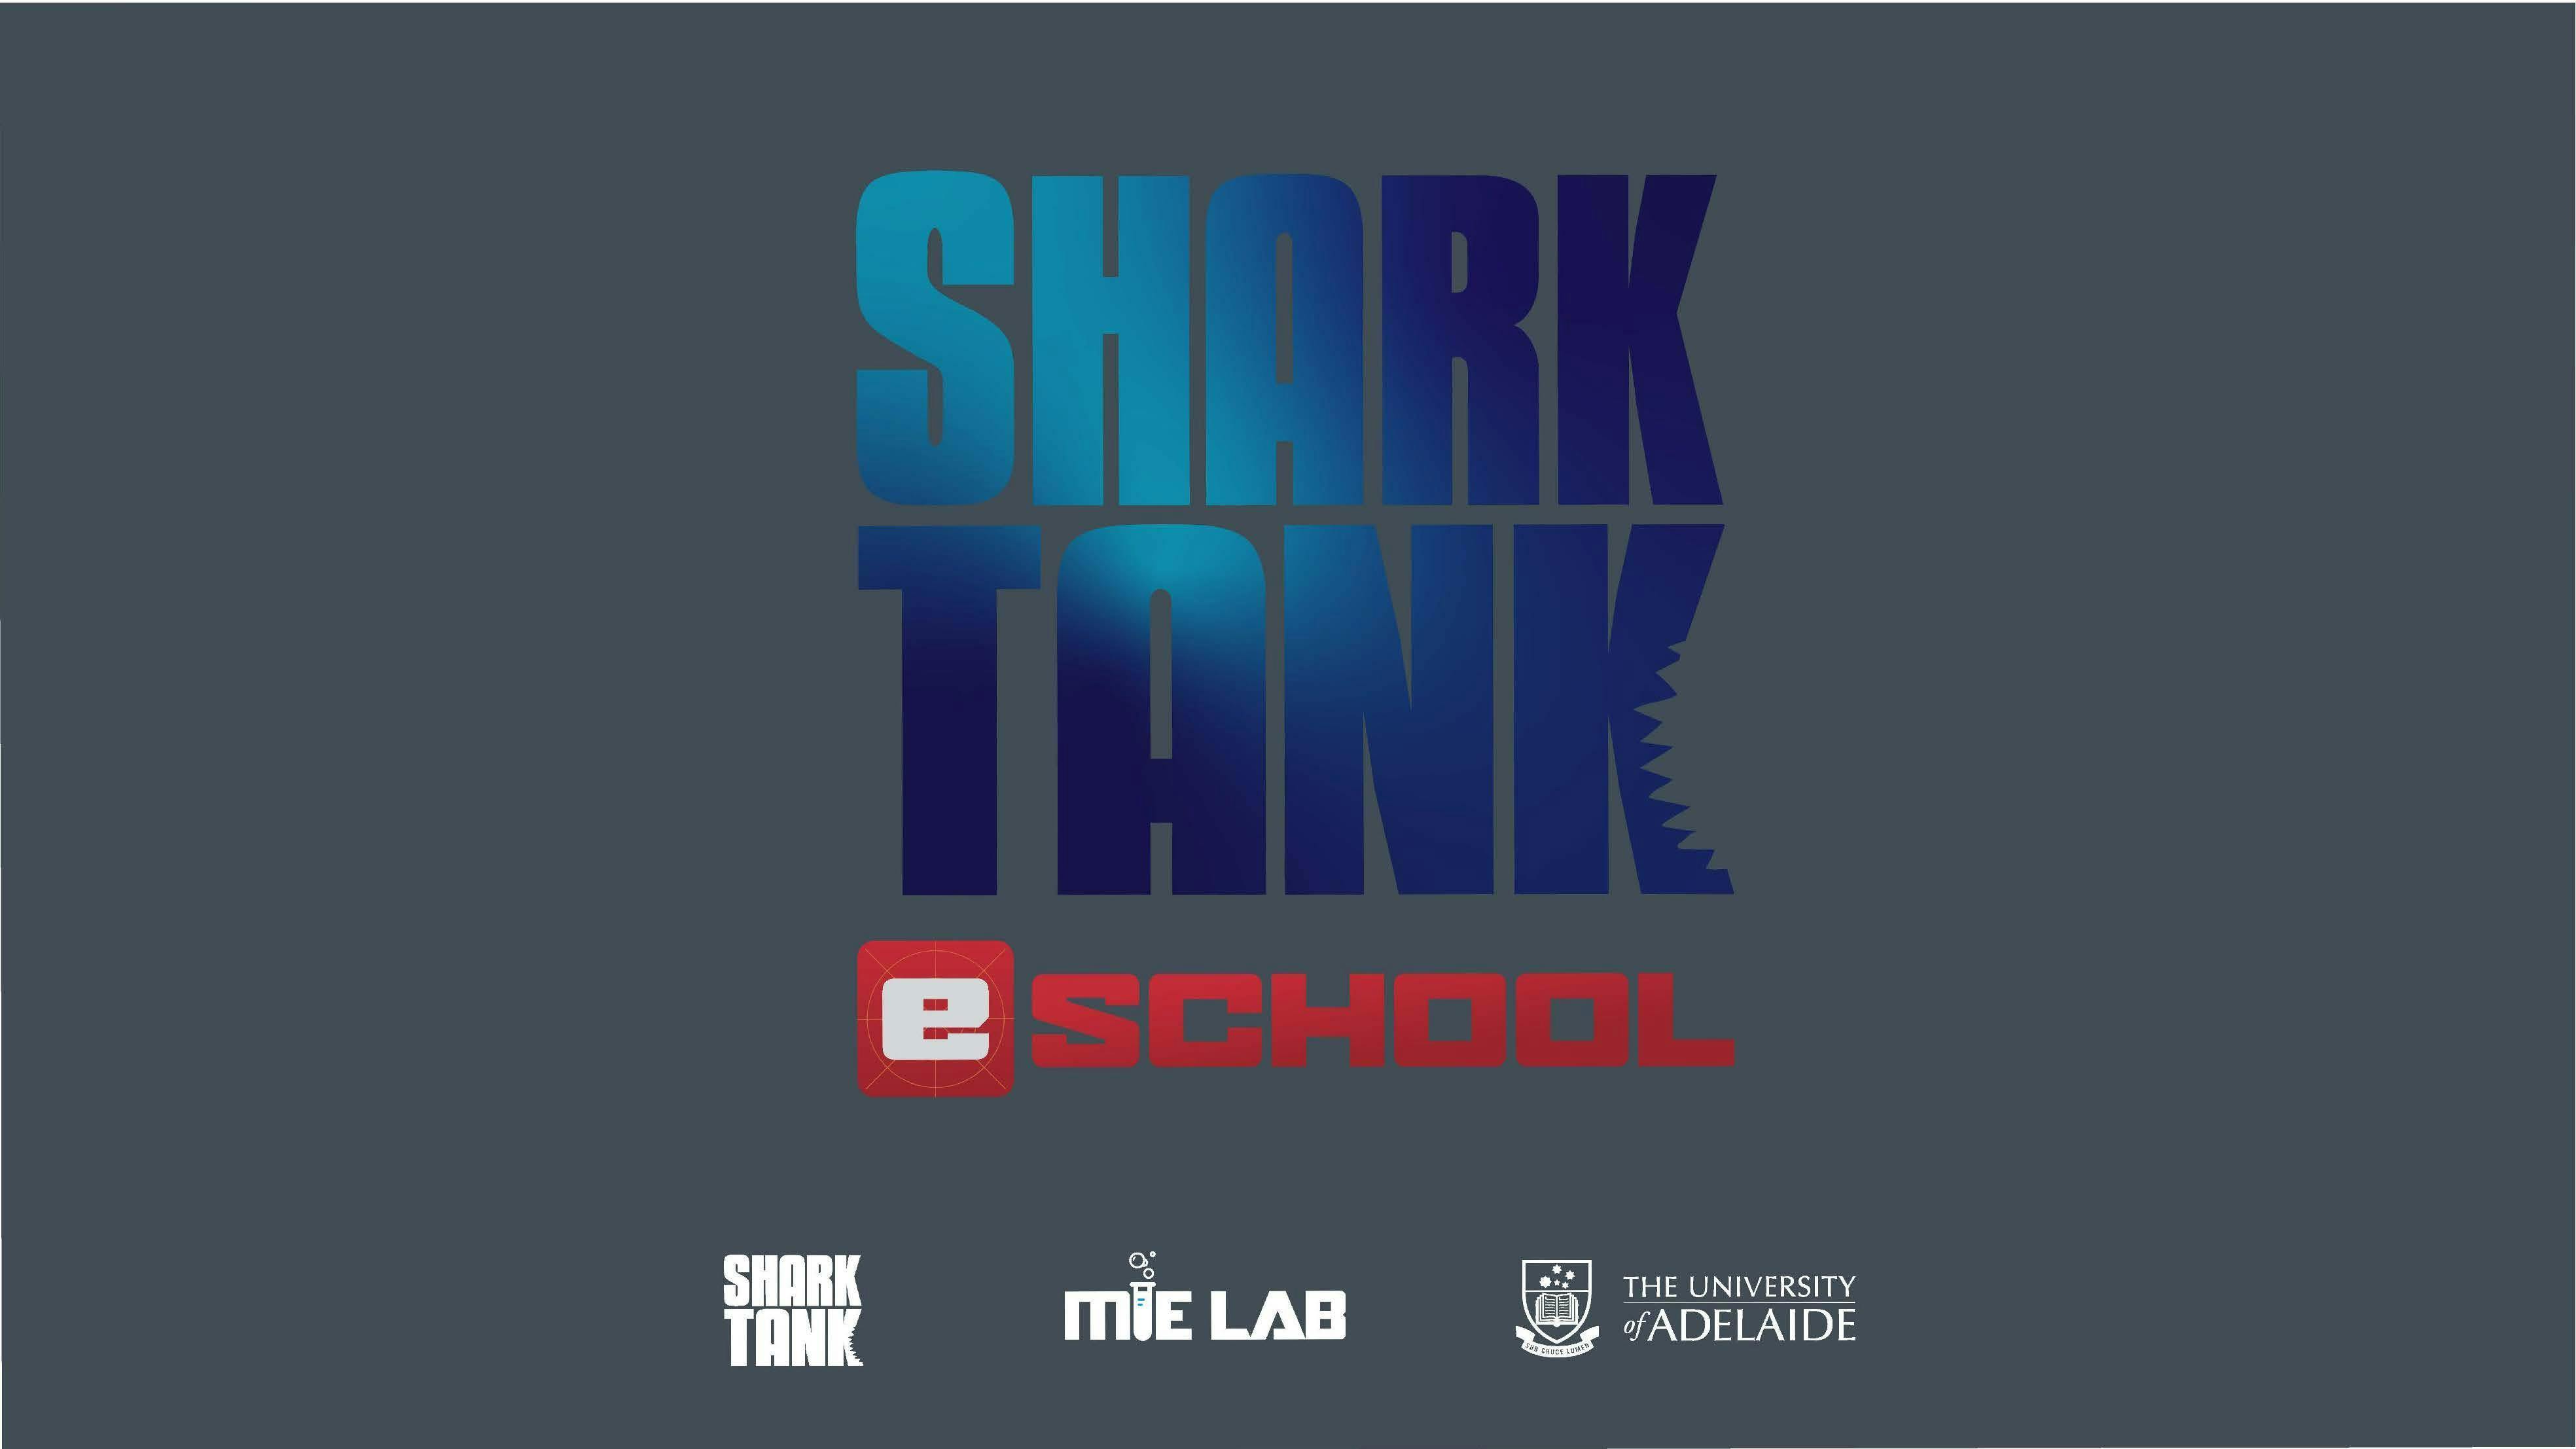 Shark Tank eSchool: Semester 2 program start